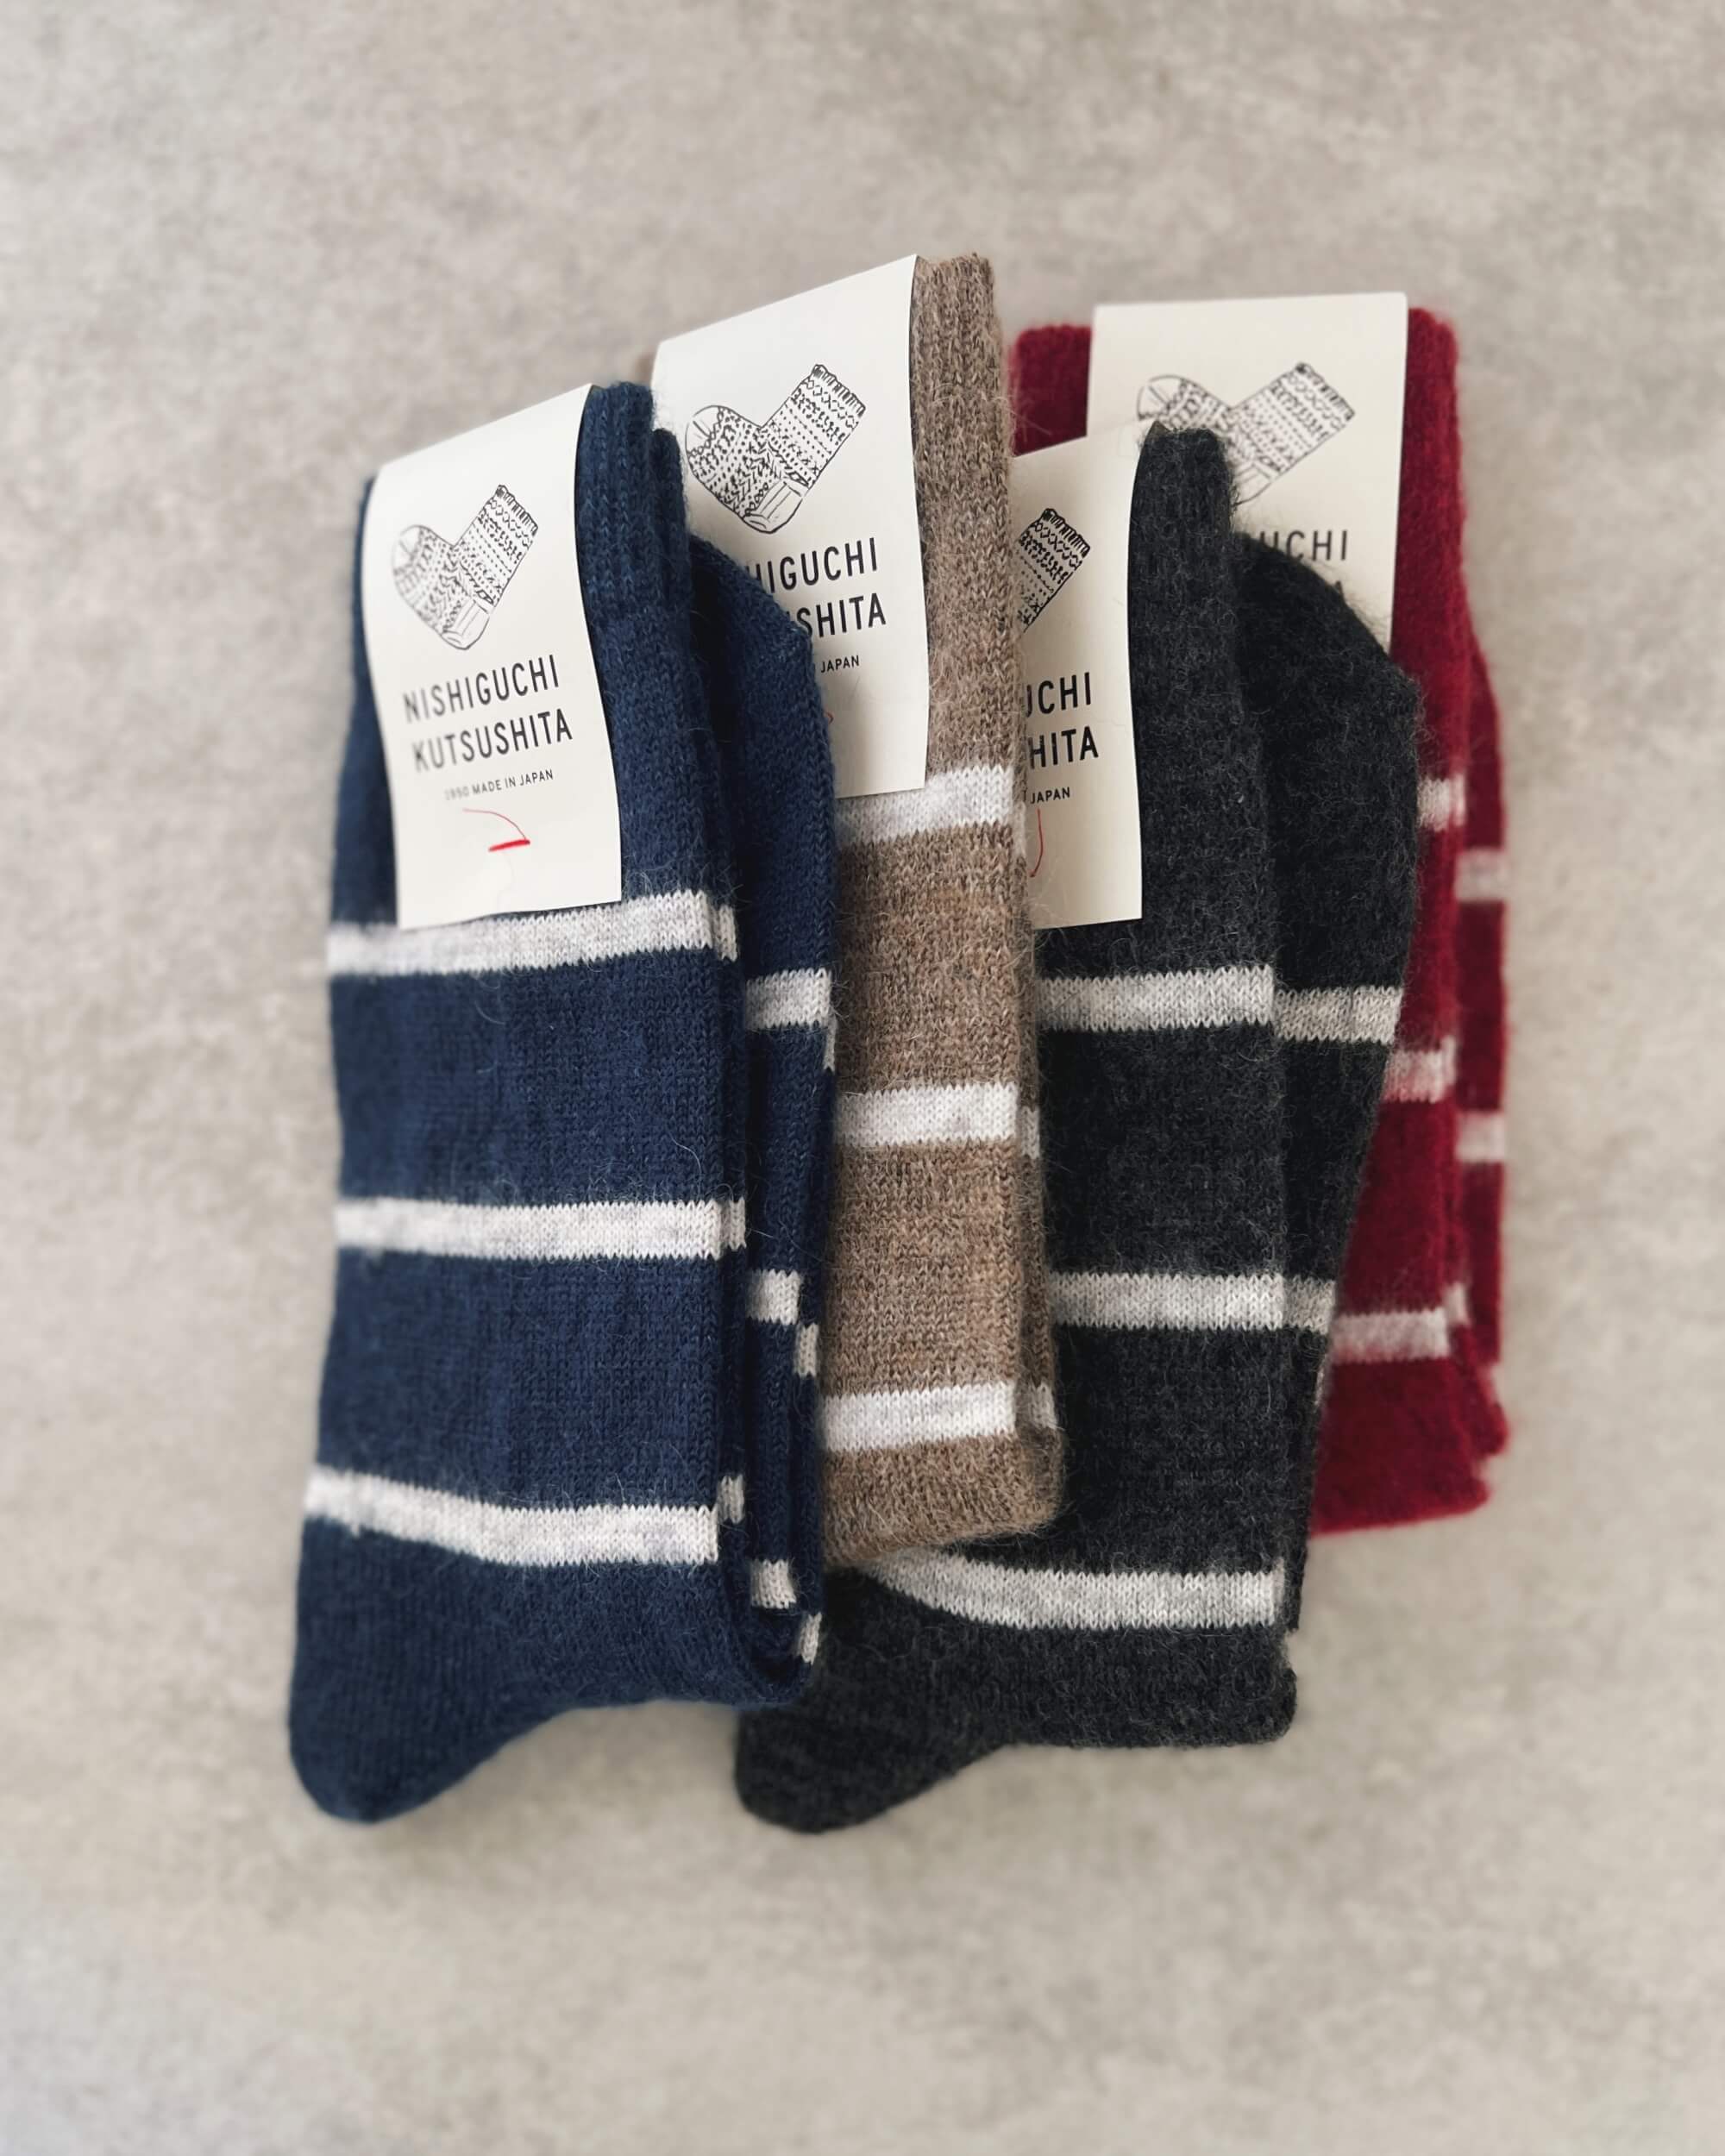 nishiguchi kutsushita : oslo mohair wool border socks